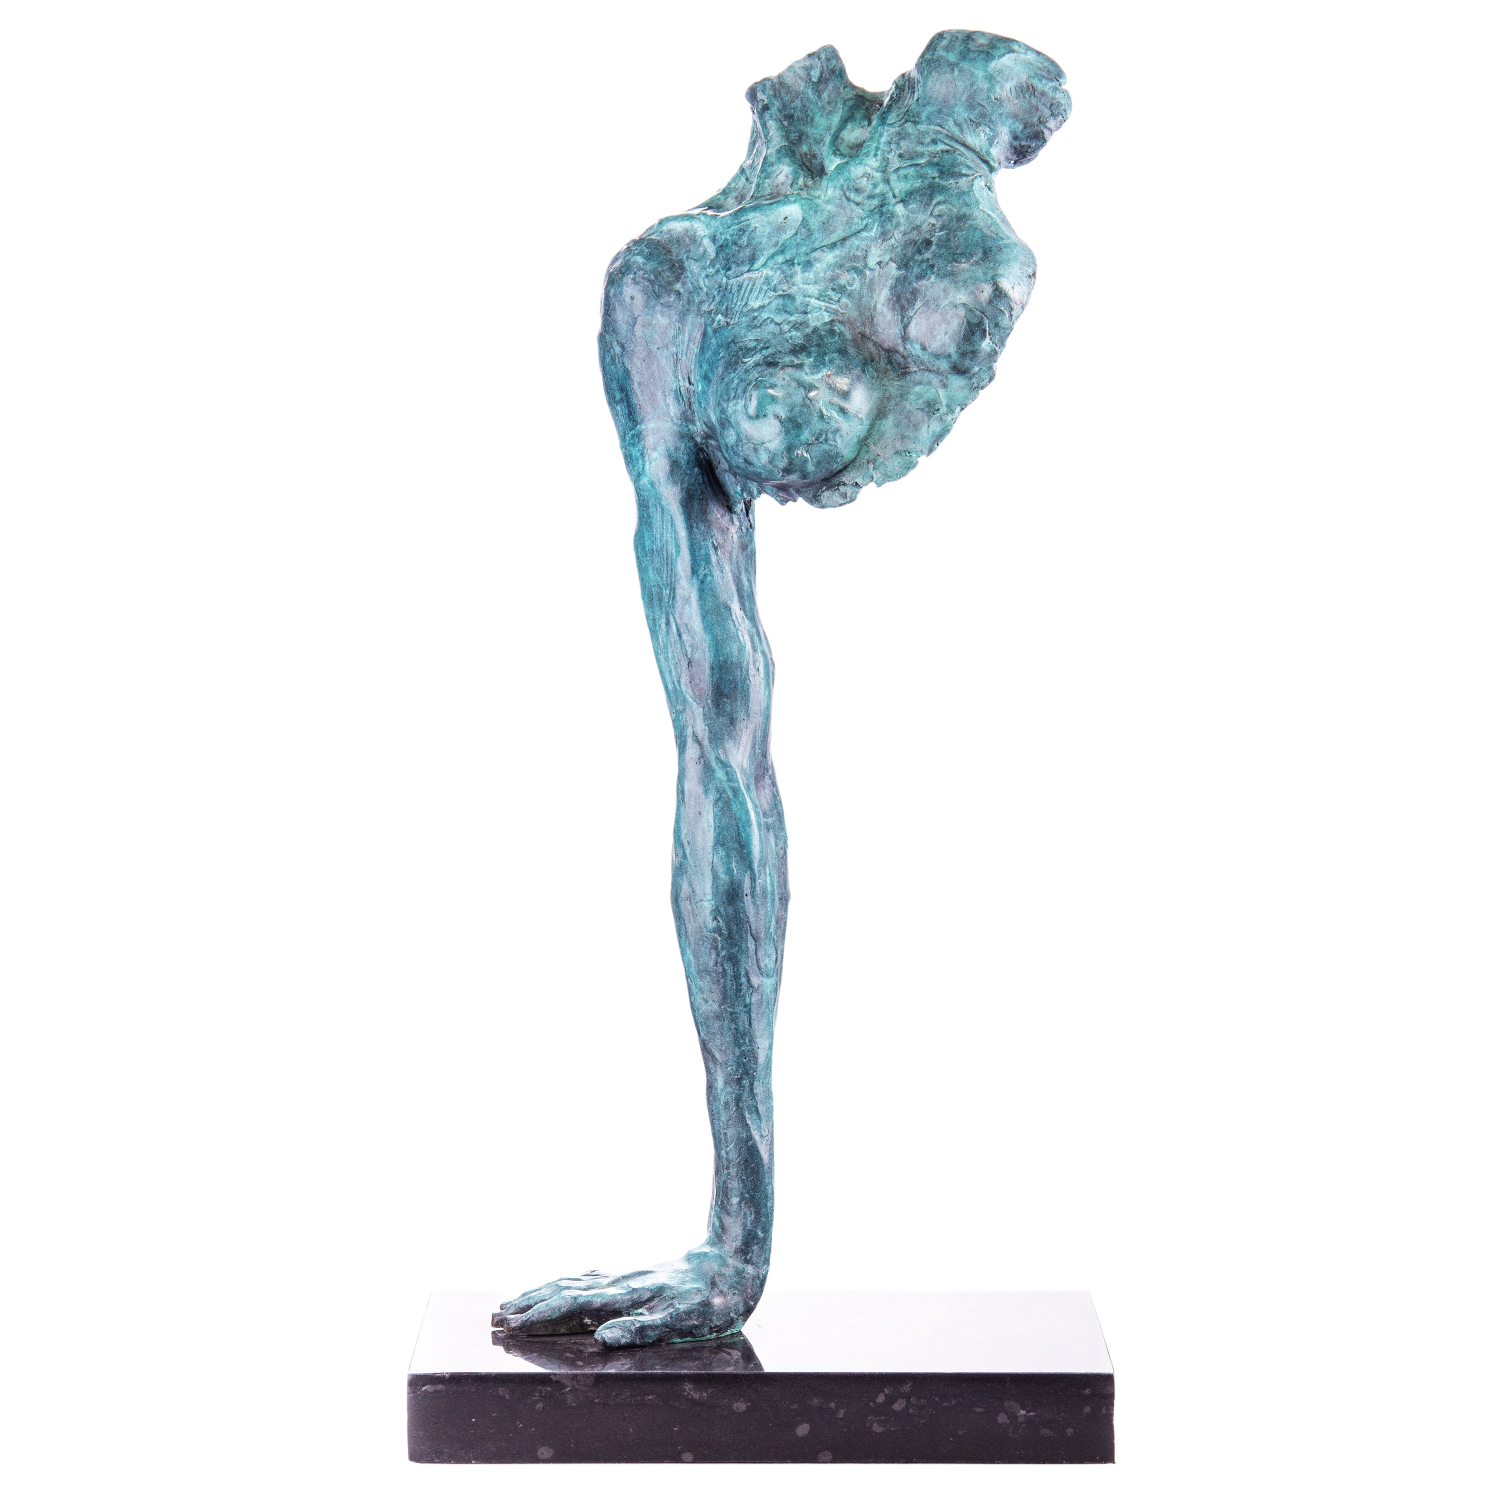 Herrie zondag Het beste Bronzen beeld "Strength in Art" te koop @ Betaalbarekunst.nl. Dit stukje  kunst van brons is een echte verrijking voor je huis.